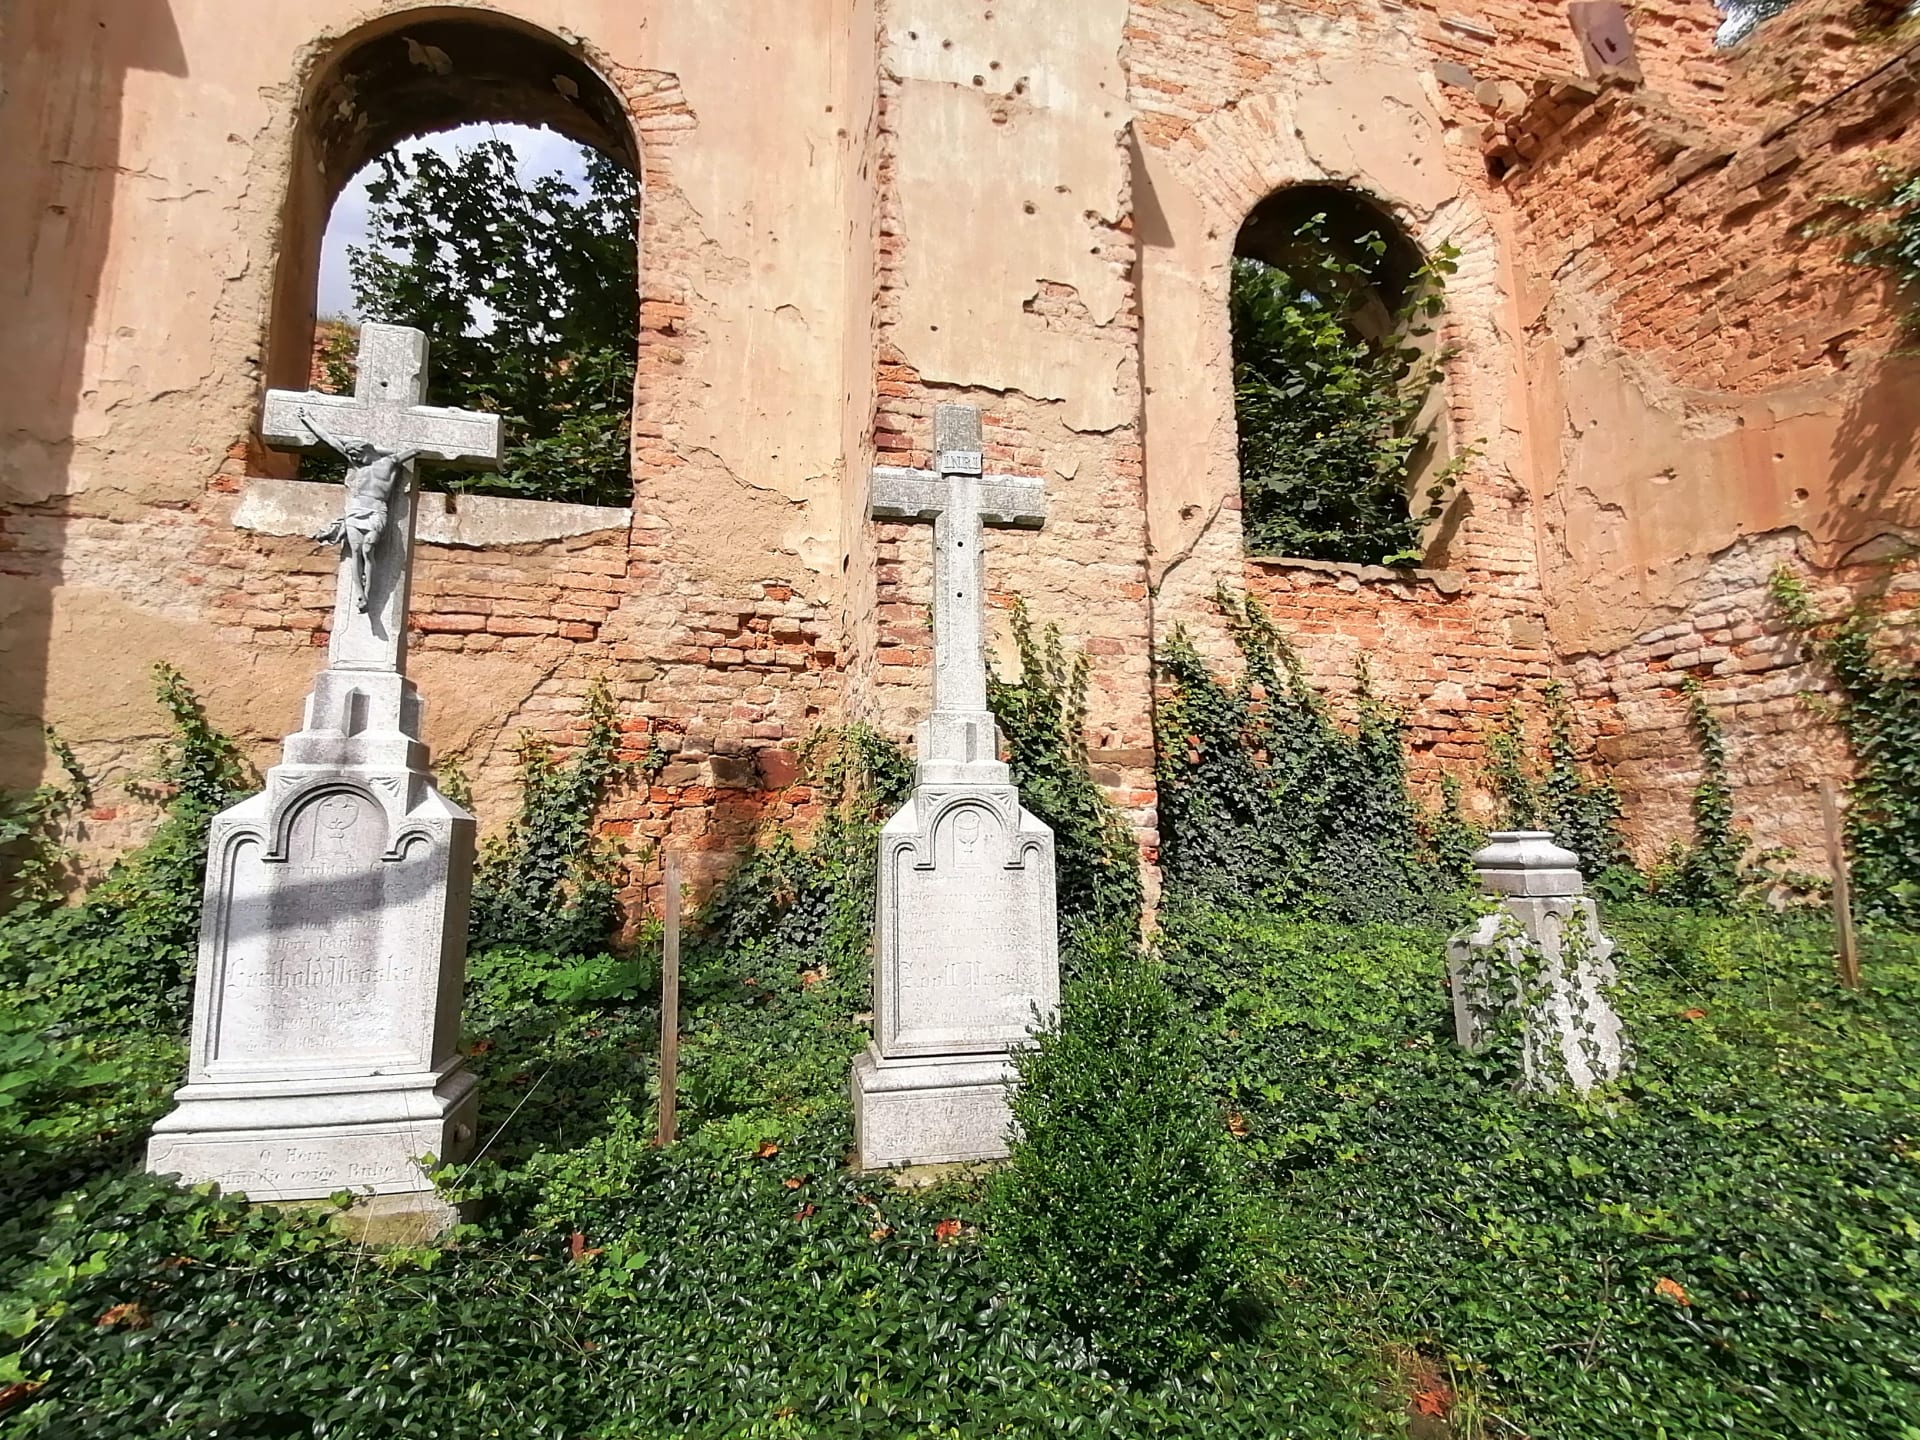 Wojnowice, rozvaliny kostela sv. Šimona a Judy Tadeáše